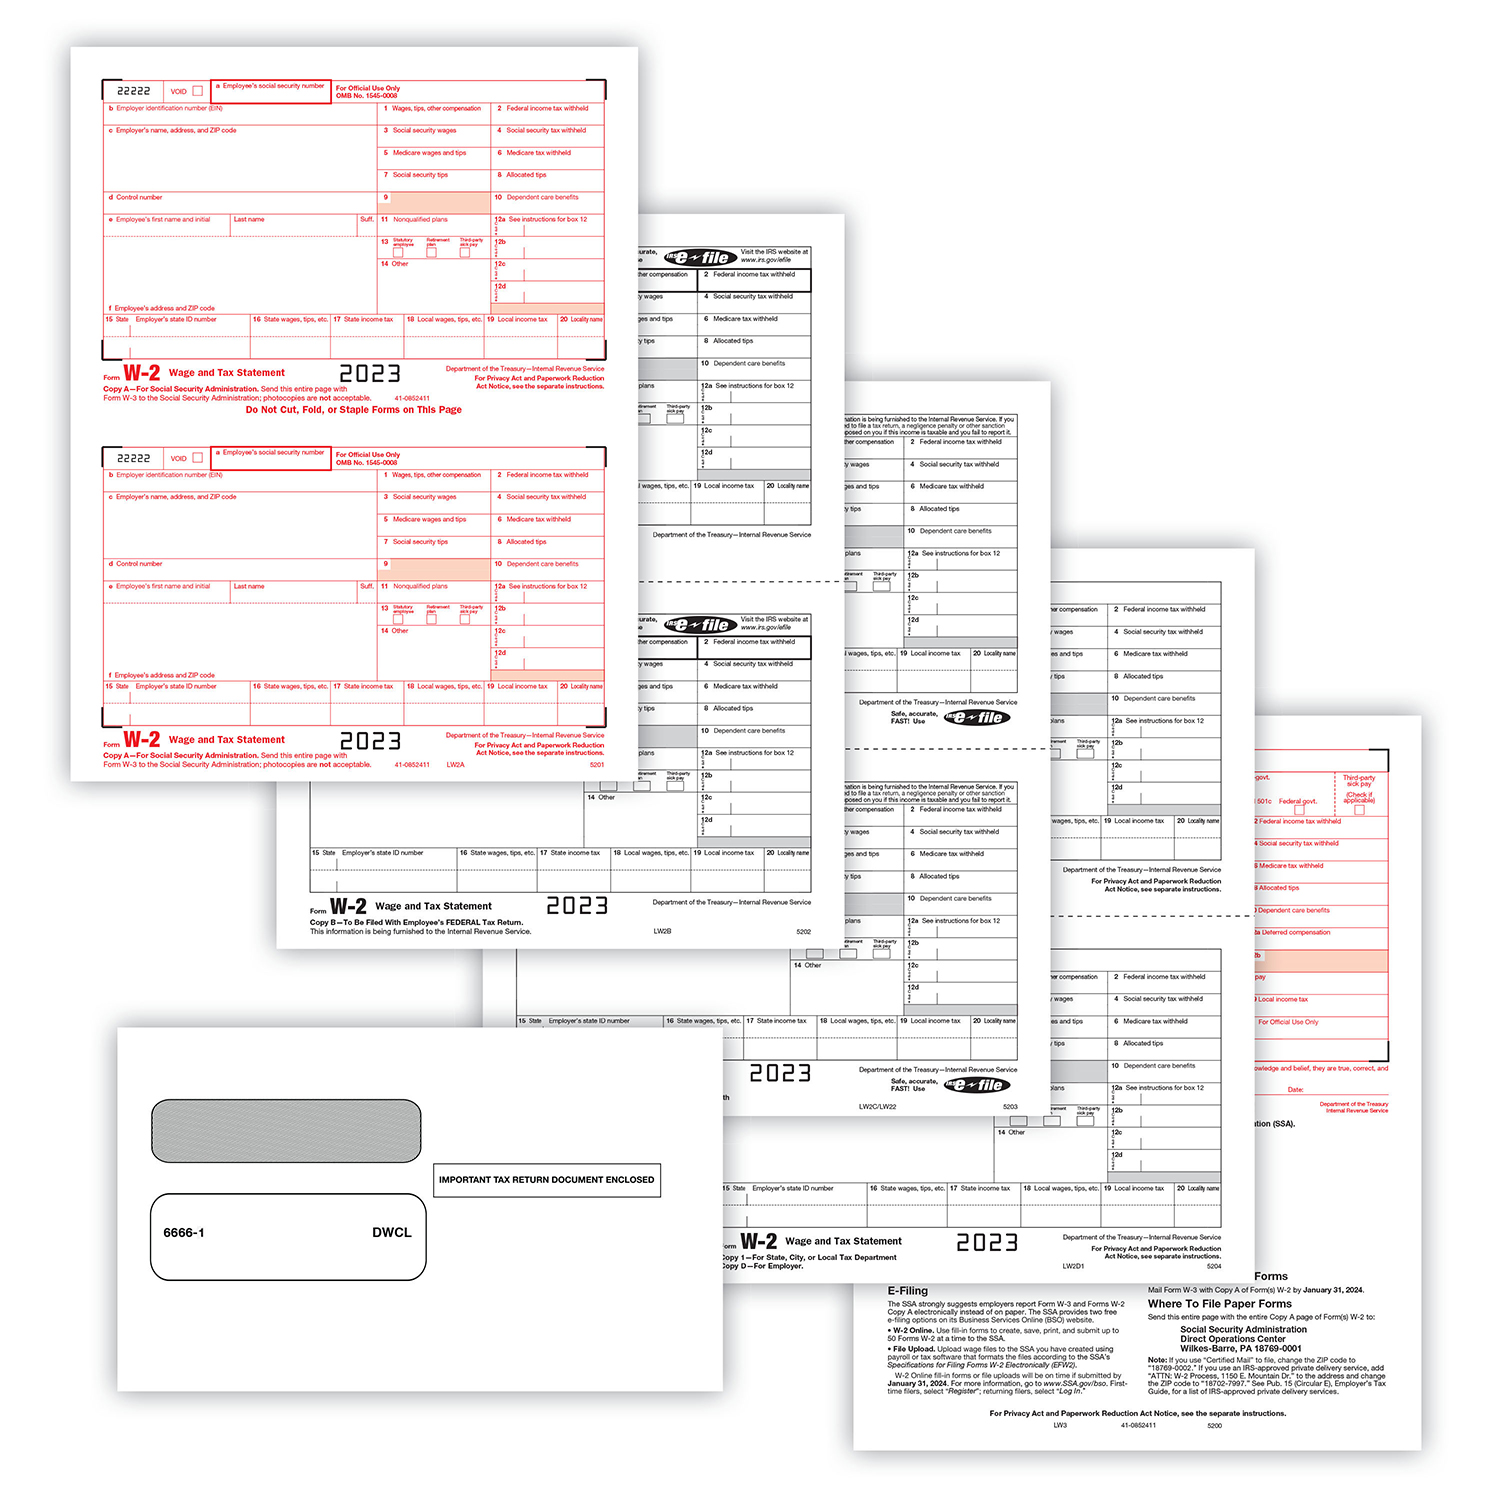 Picture of W-2 Set, Copy A,B,C,D,1,2 w/ Envelopes (DWCL) (100 Employees/Recipients)